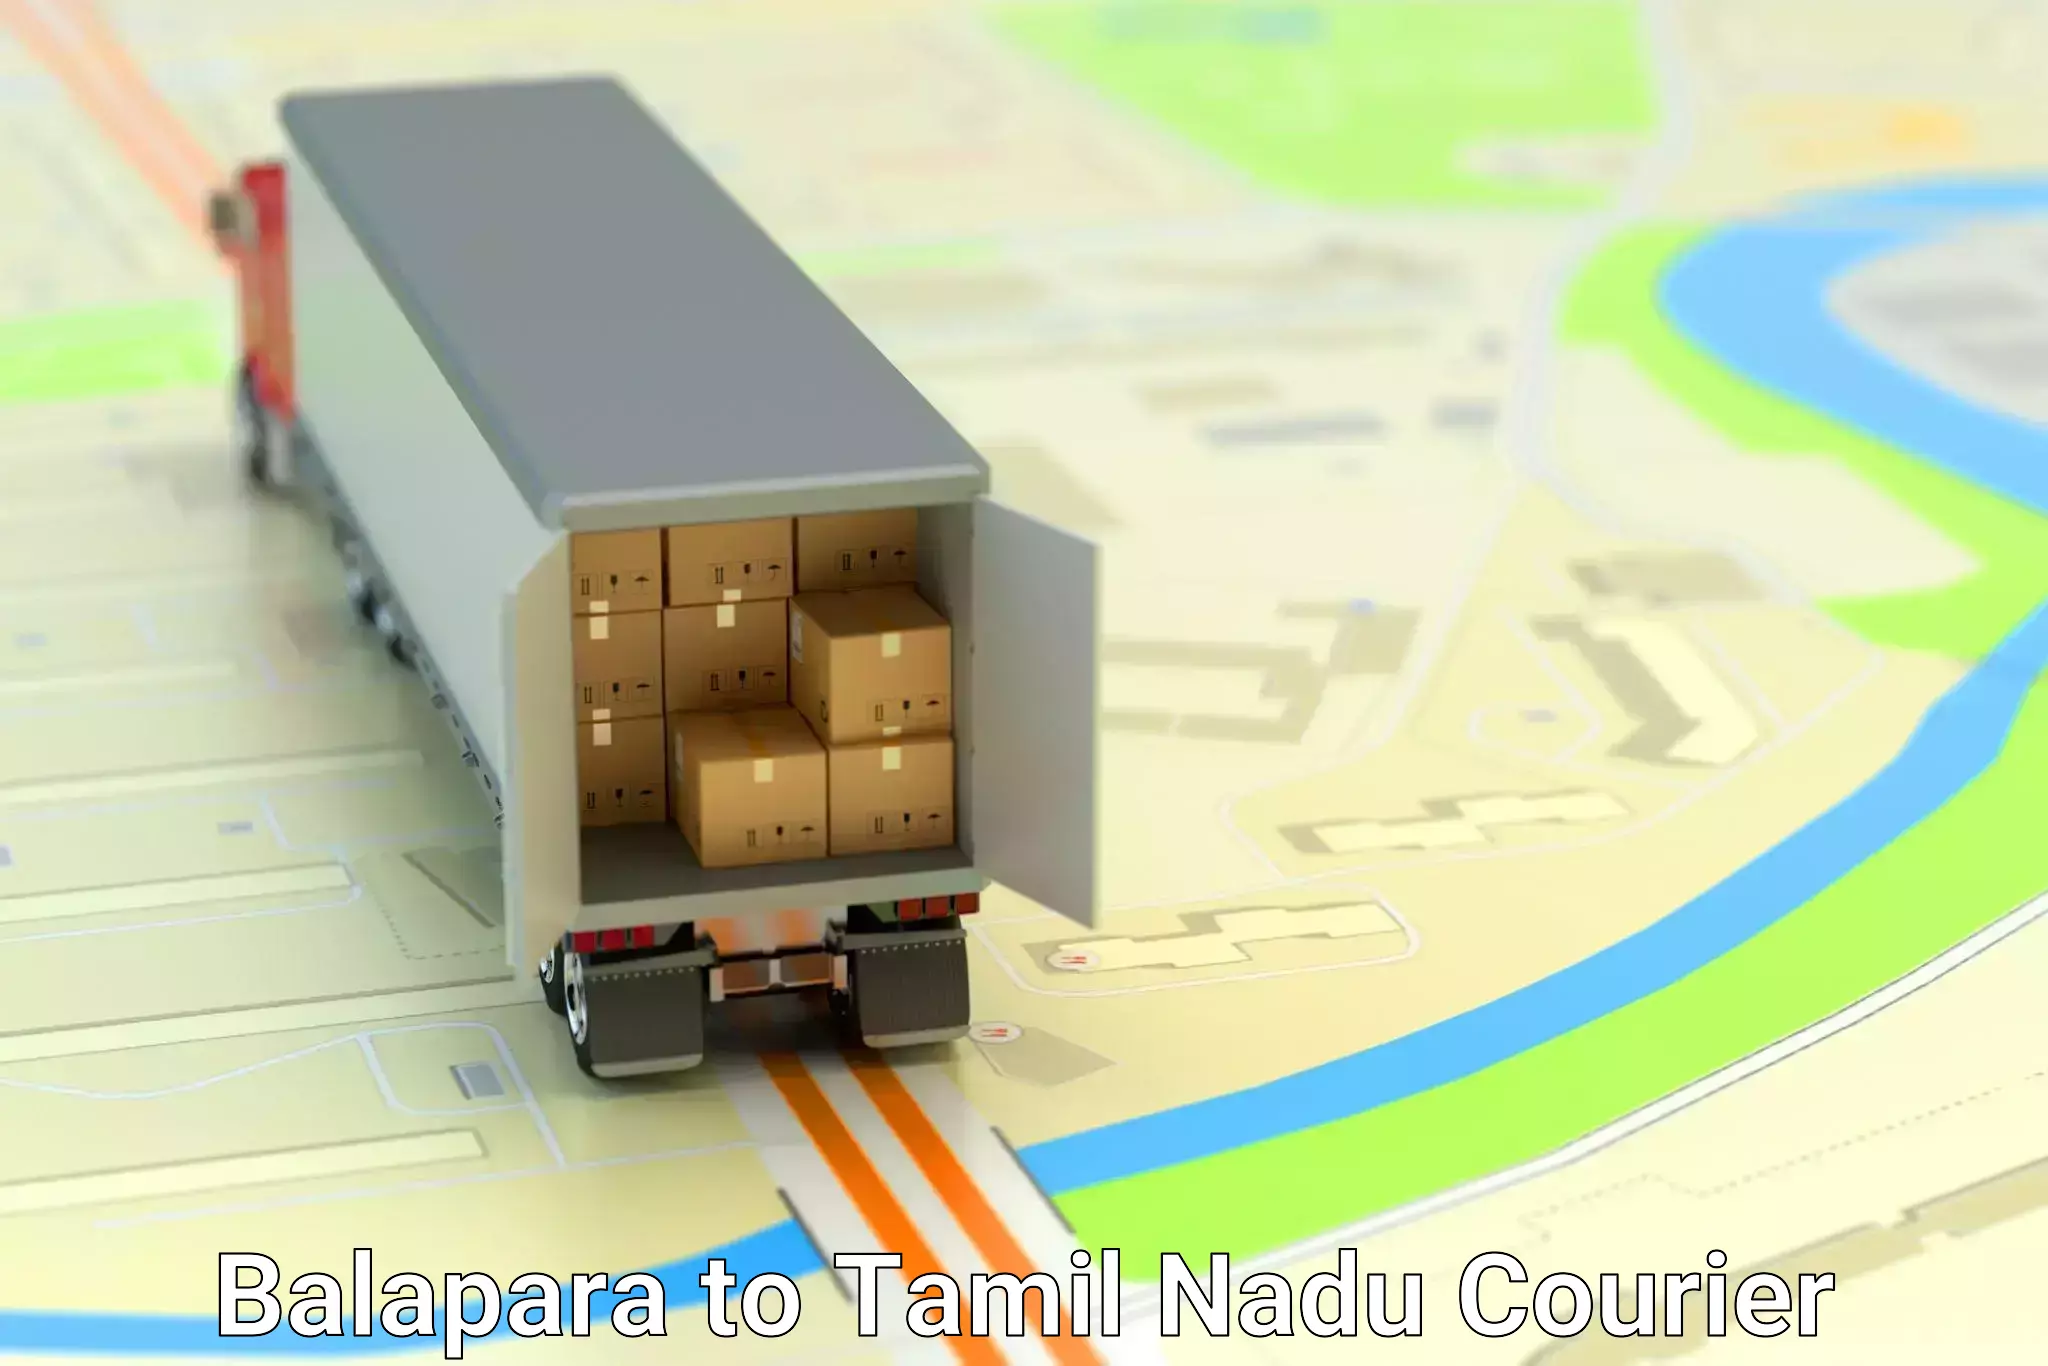 Next-day freight services Balapara to Chennai Port